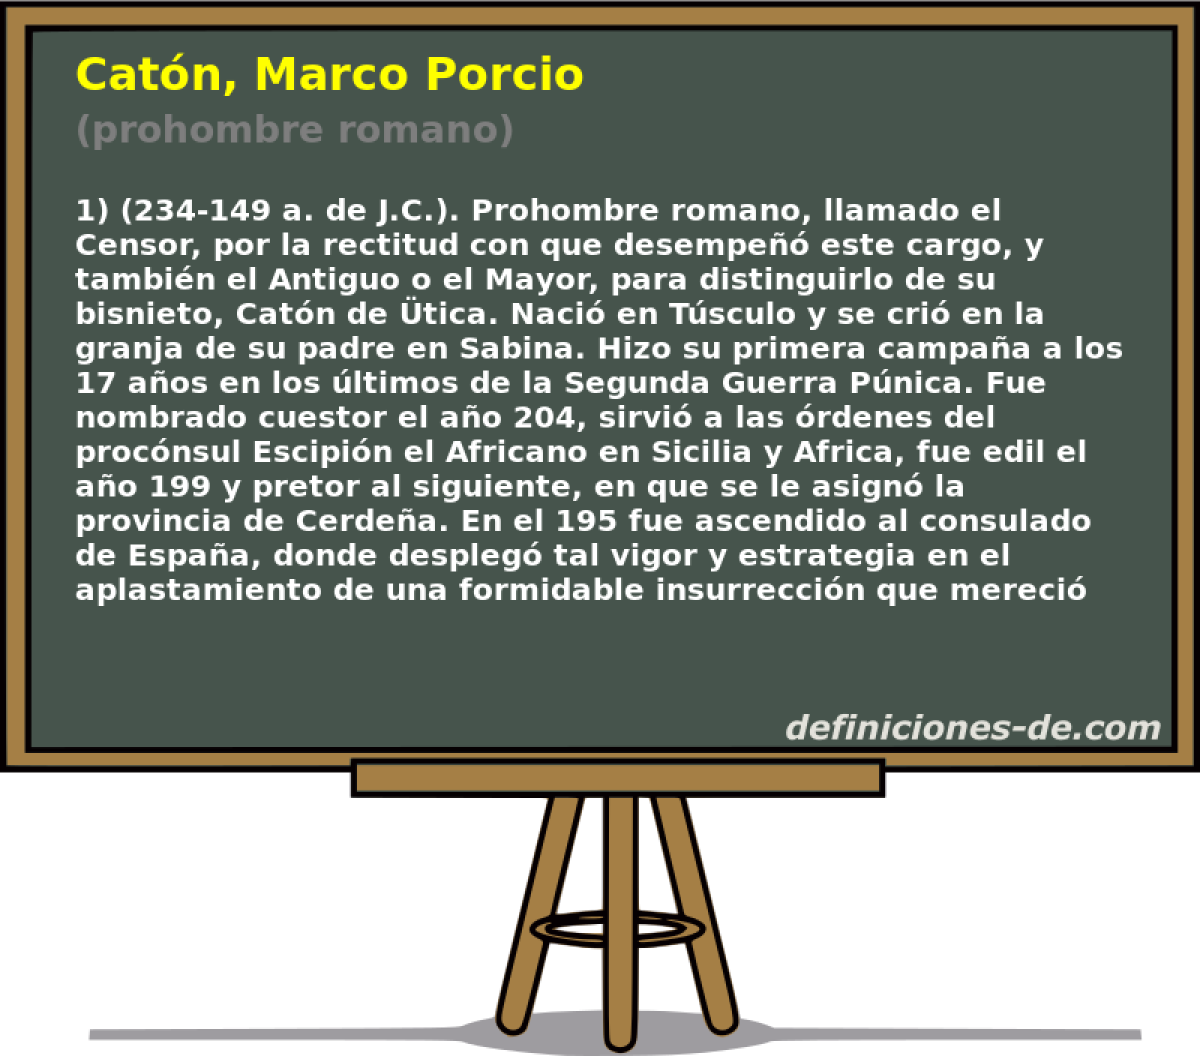 Catn, Marco Porcio (prohombre romano)